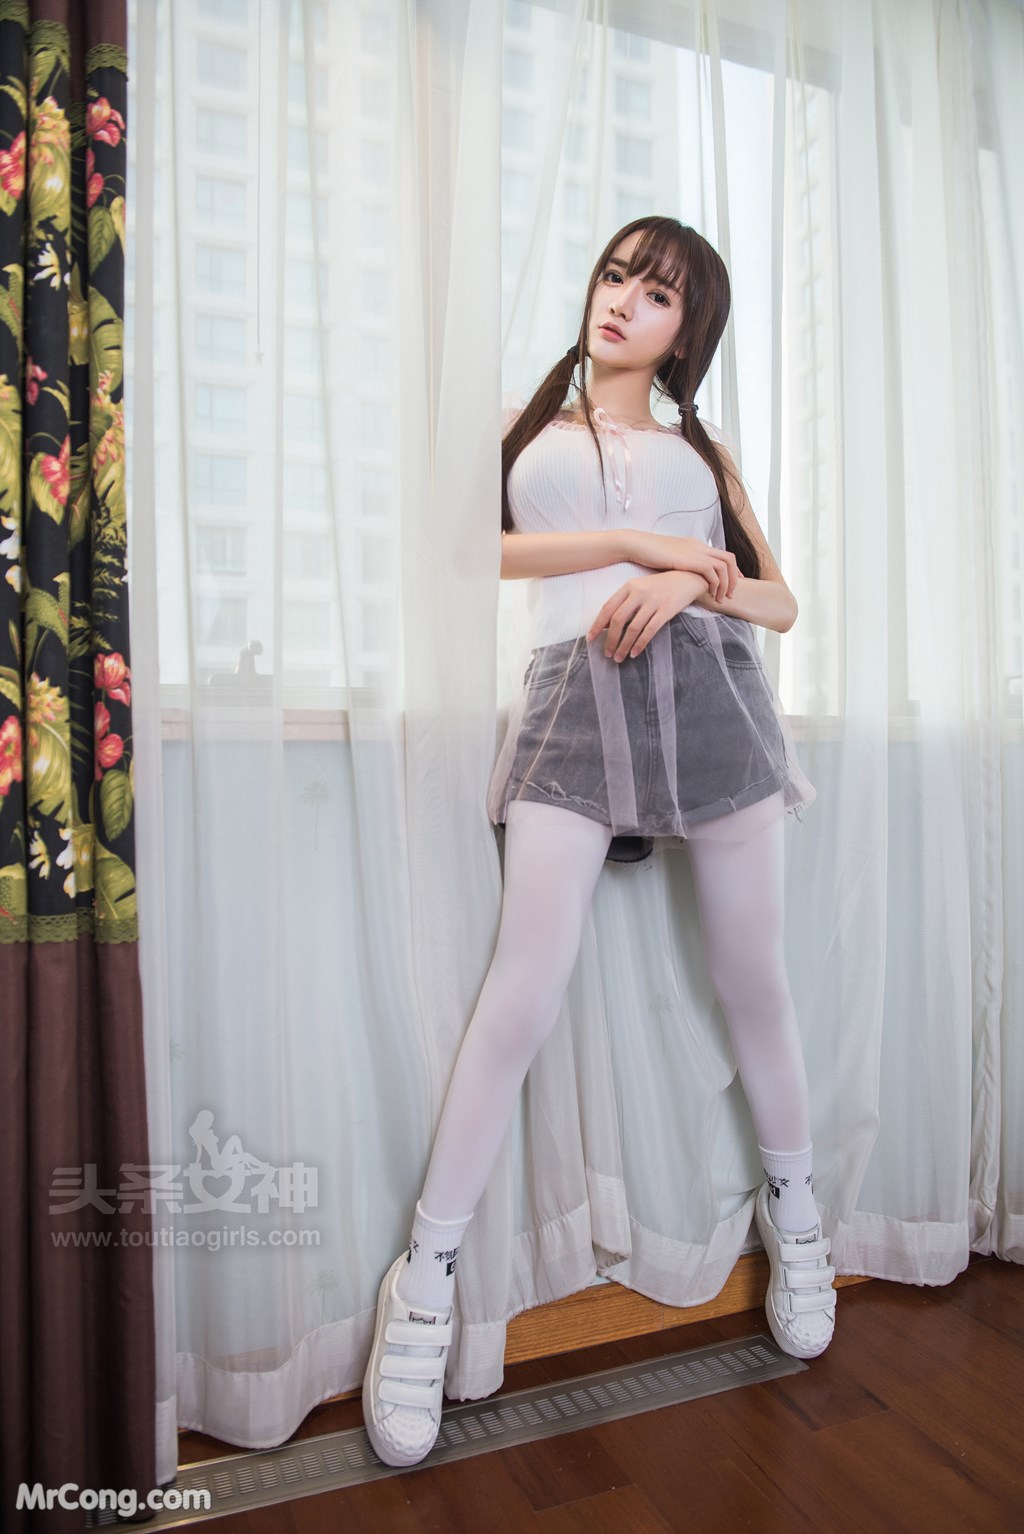 TouTiao 2017-08-11: Model Xiao Ru Jing (小 如 镜) (27 photos) photo 2-1